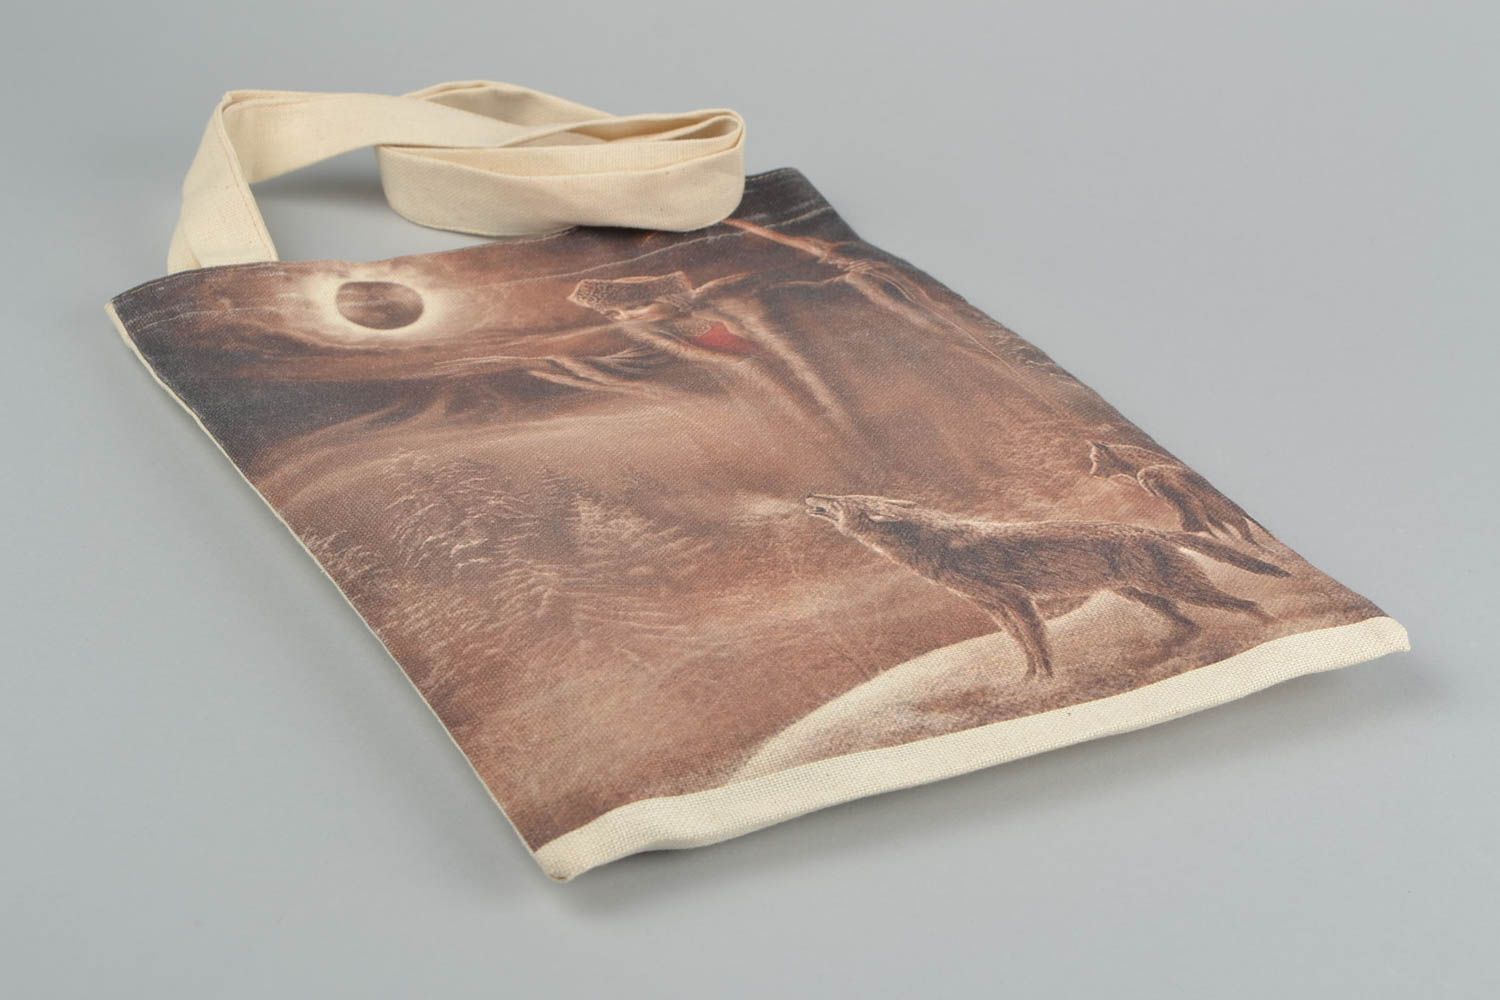 Öko Handtasche aus Stoff mit Print groß an Schulter unisex Accessoire handmade foto 3